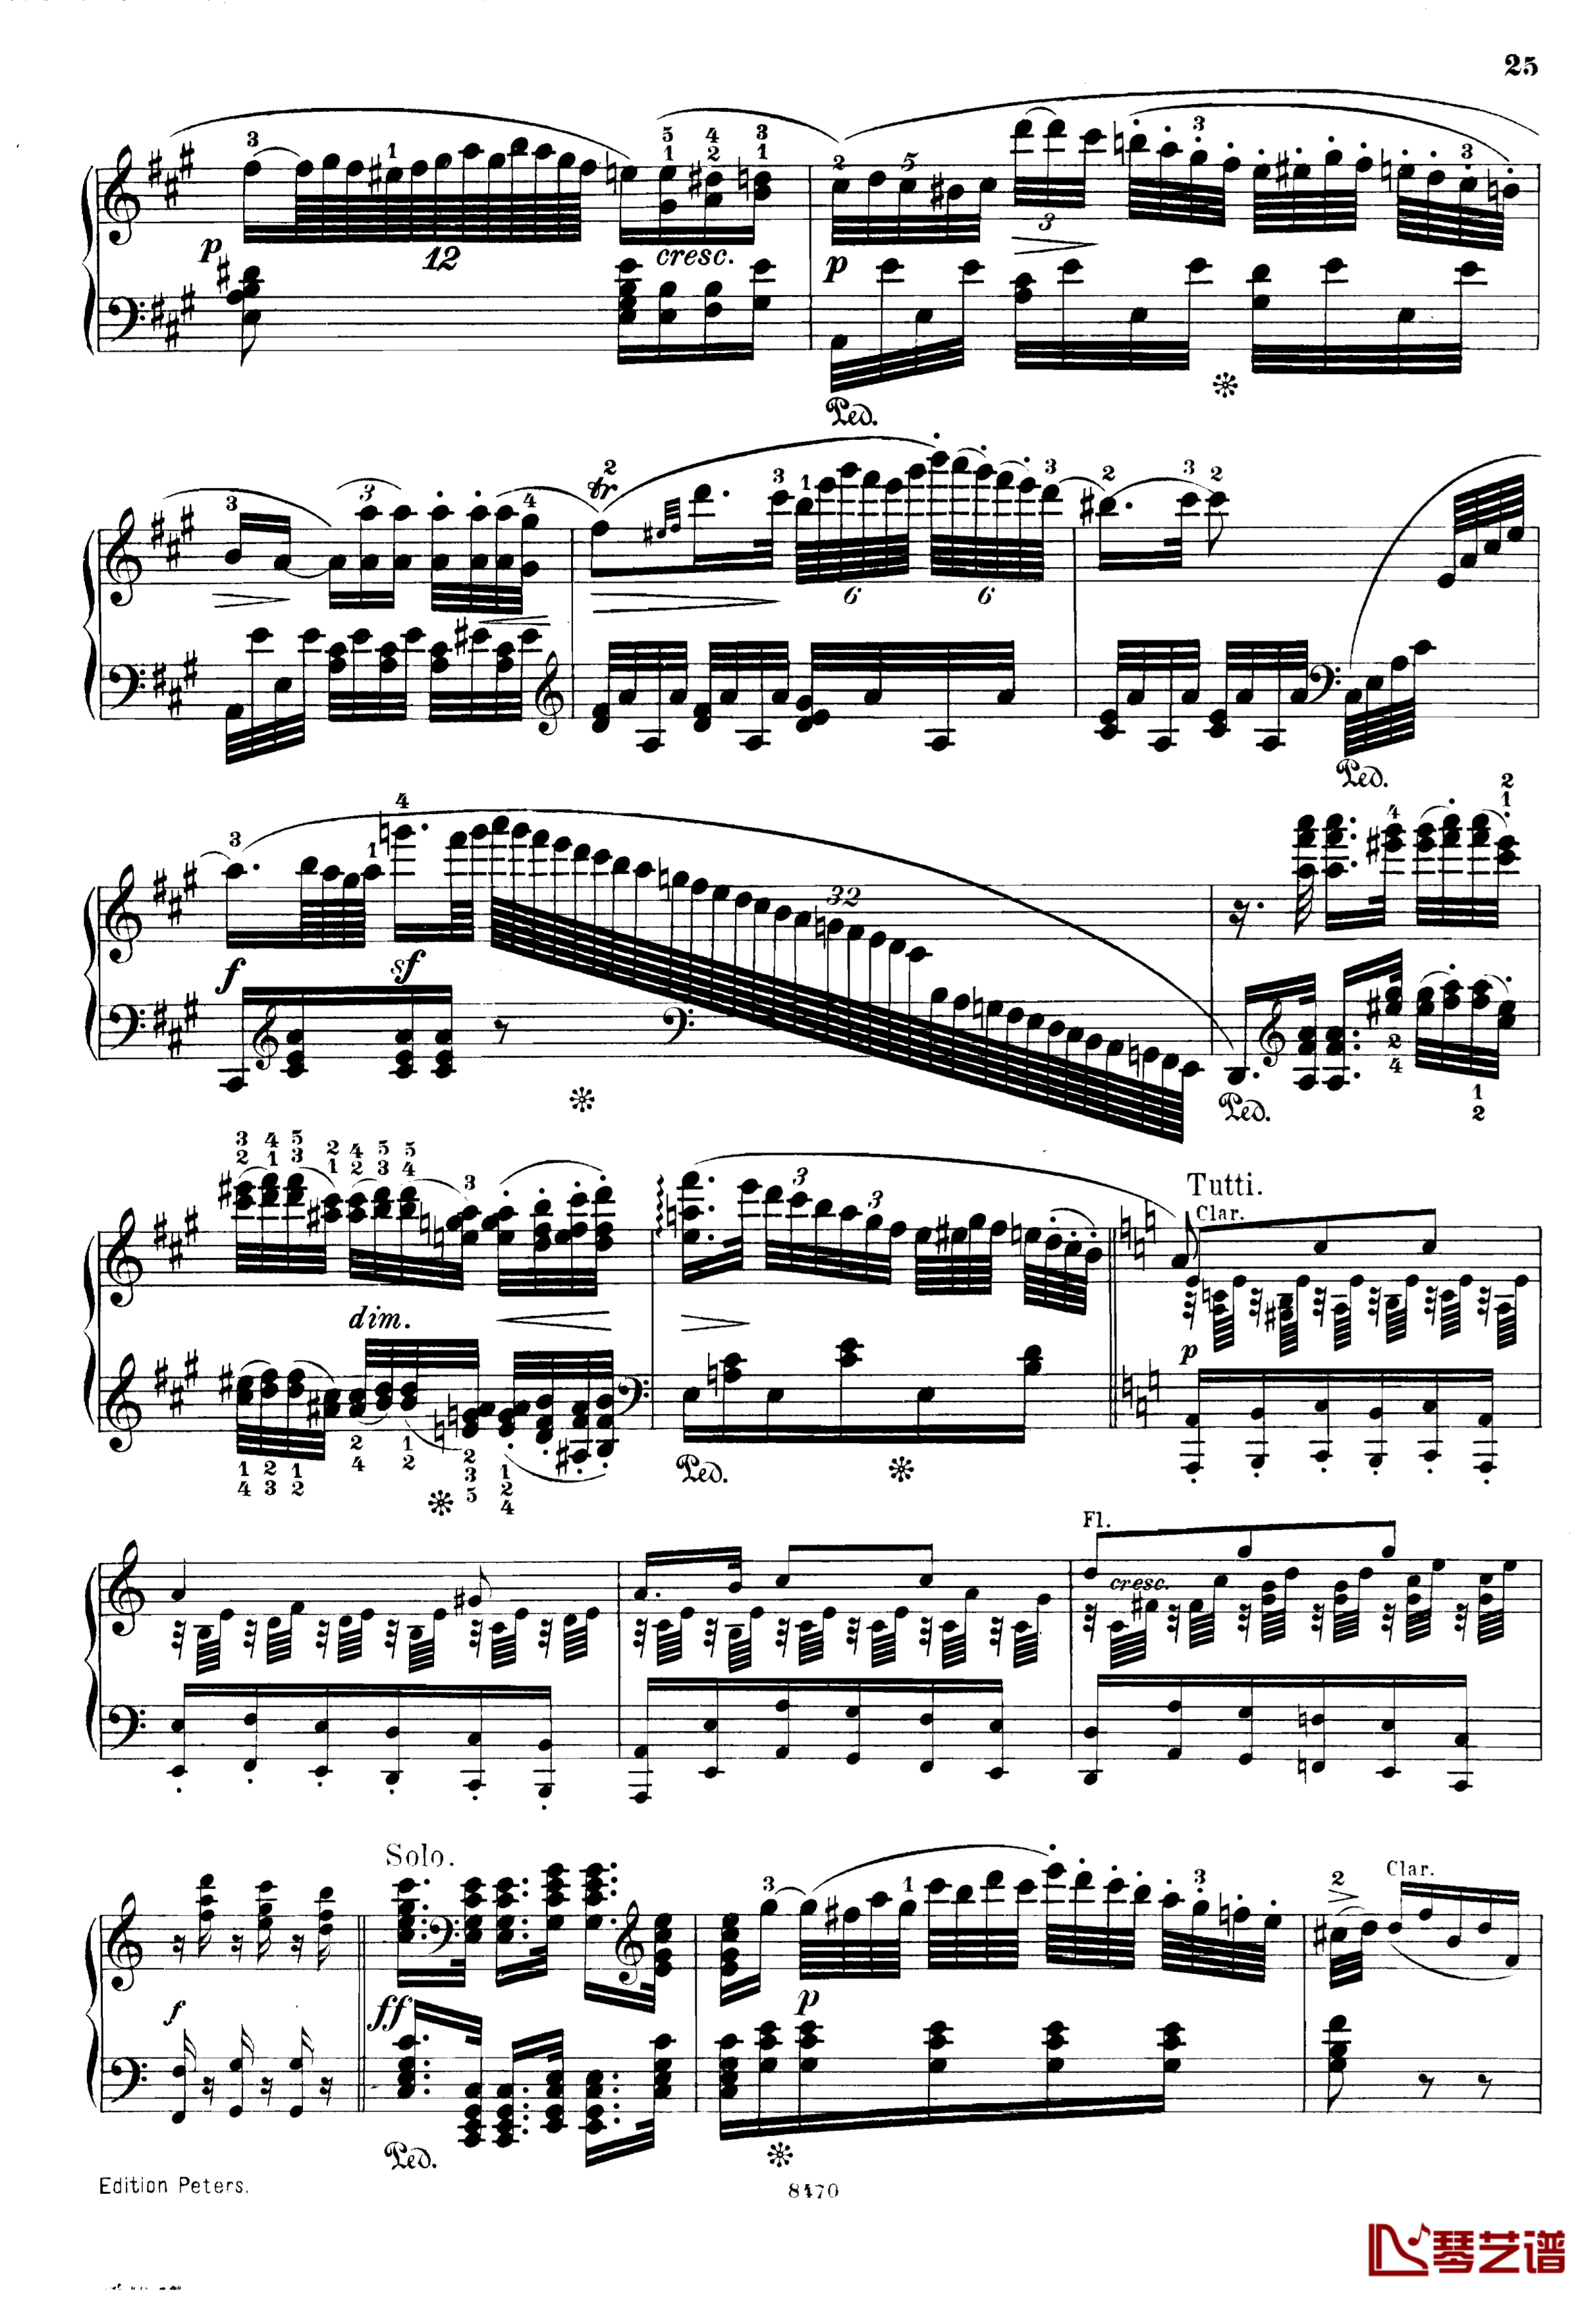 升c小调第三钢琴协奏曲Op.55钢琴谱-克里斯蒂安-里斯25